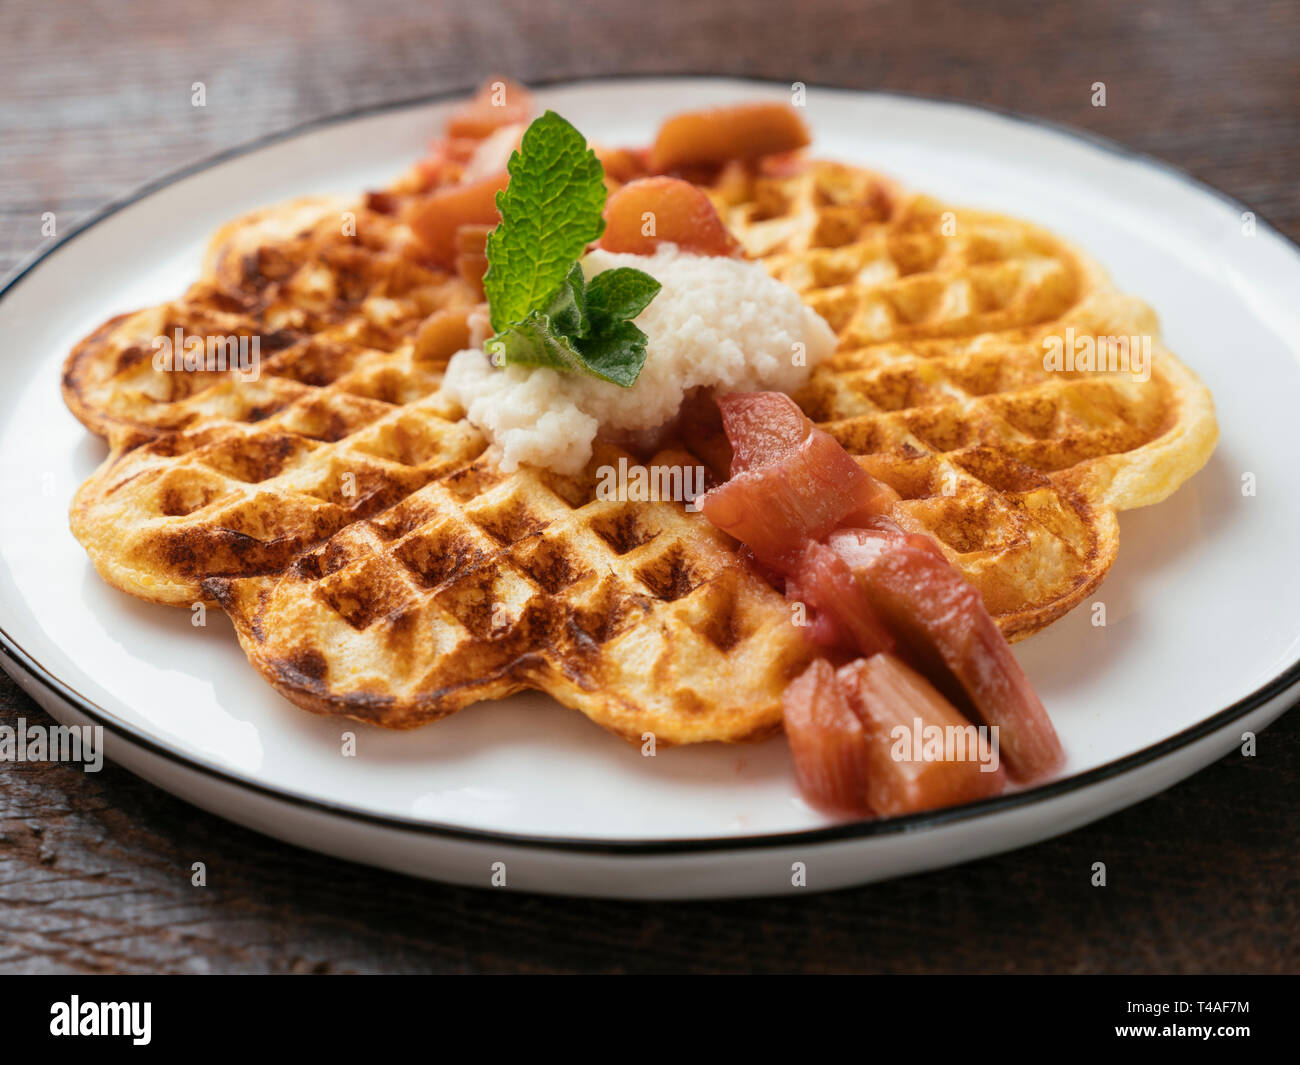 Vegan Waffles with Rhubarb Sauce Stock Photo